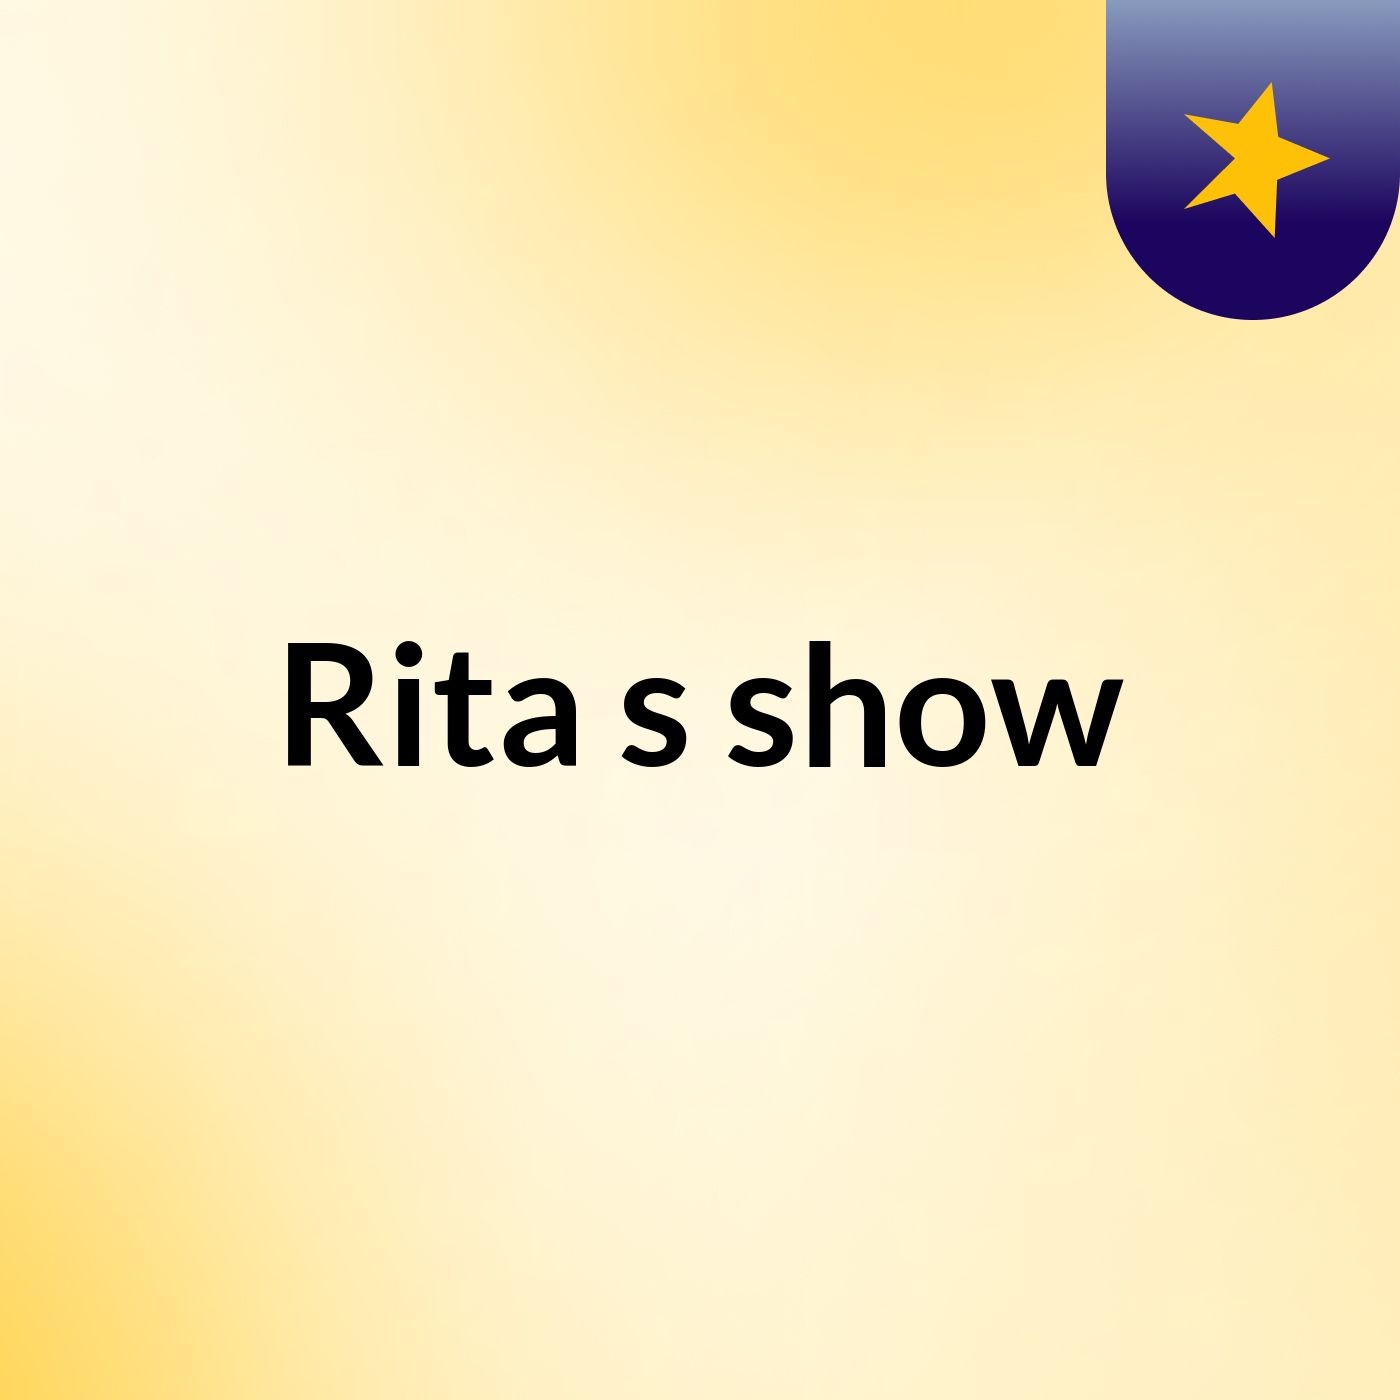 Rita's show